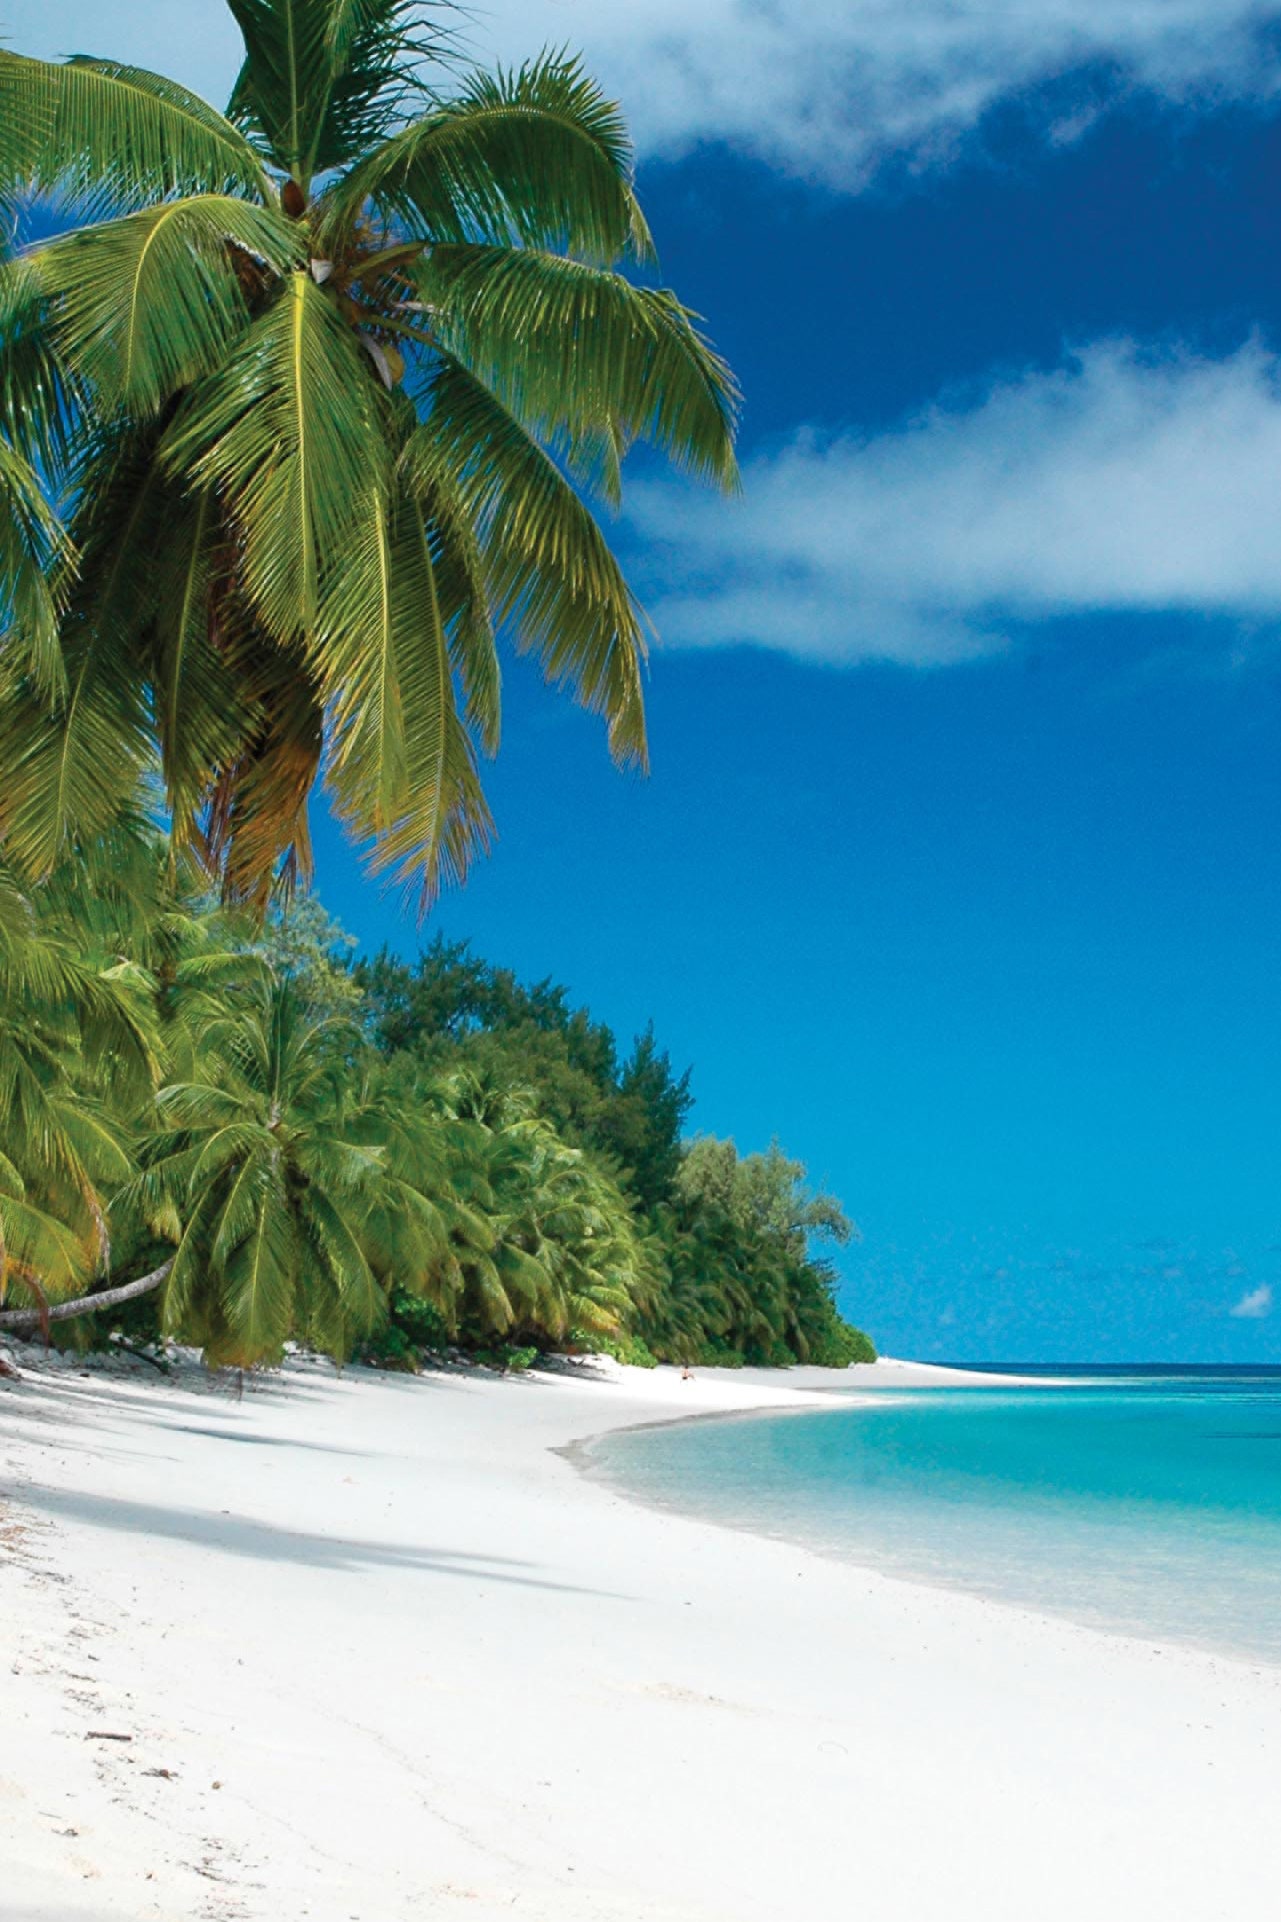 На какие Сейшельские острова стоит отправиться этим летом